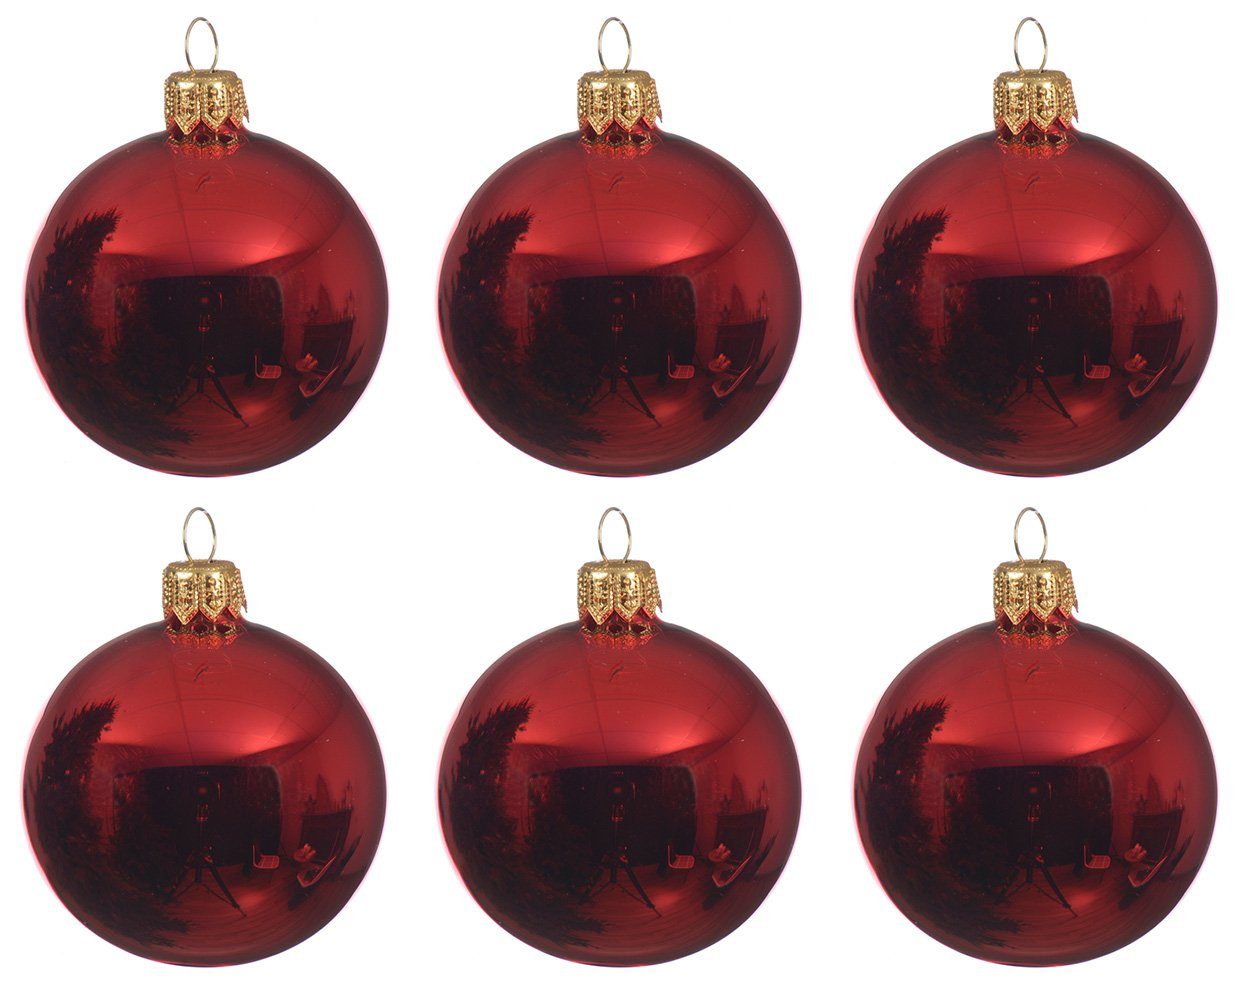 Decoris season decorations Christbaumschmuck, Weihnachtskugeln Glas 8cm mundgeblasen 6er Box - Weihnachtsrot glanz